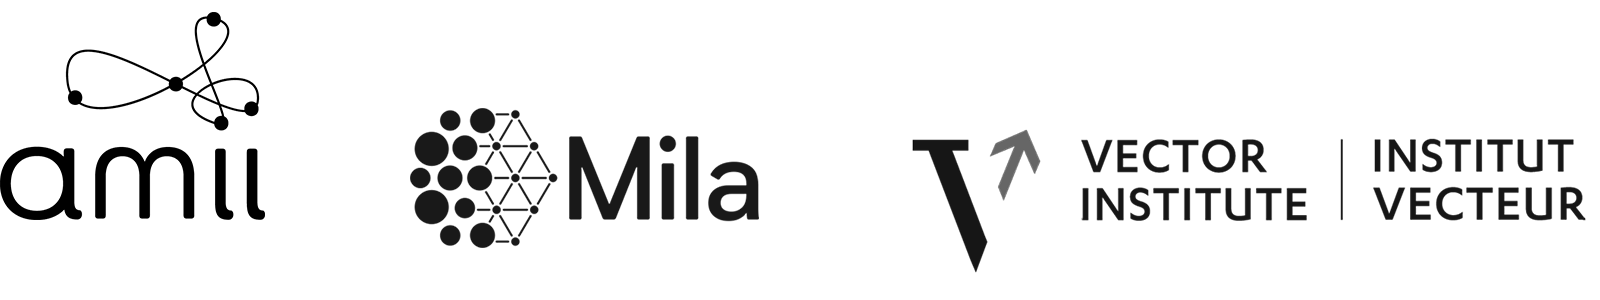 amii, Mila, Vector Institute logos